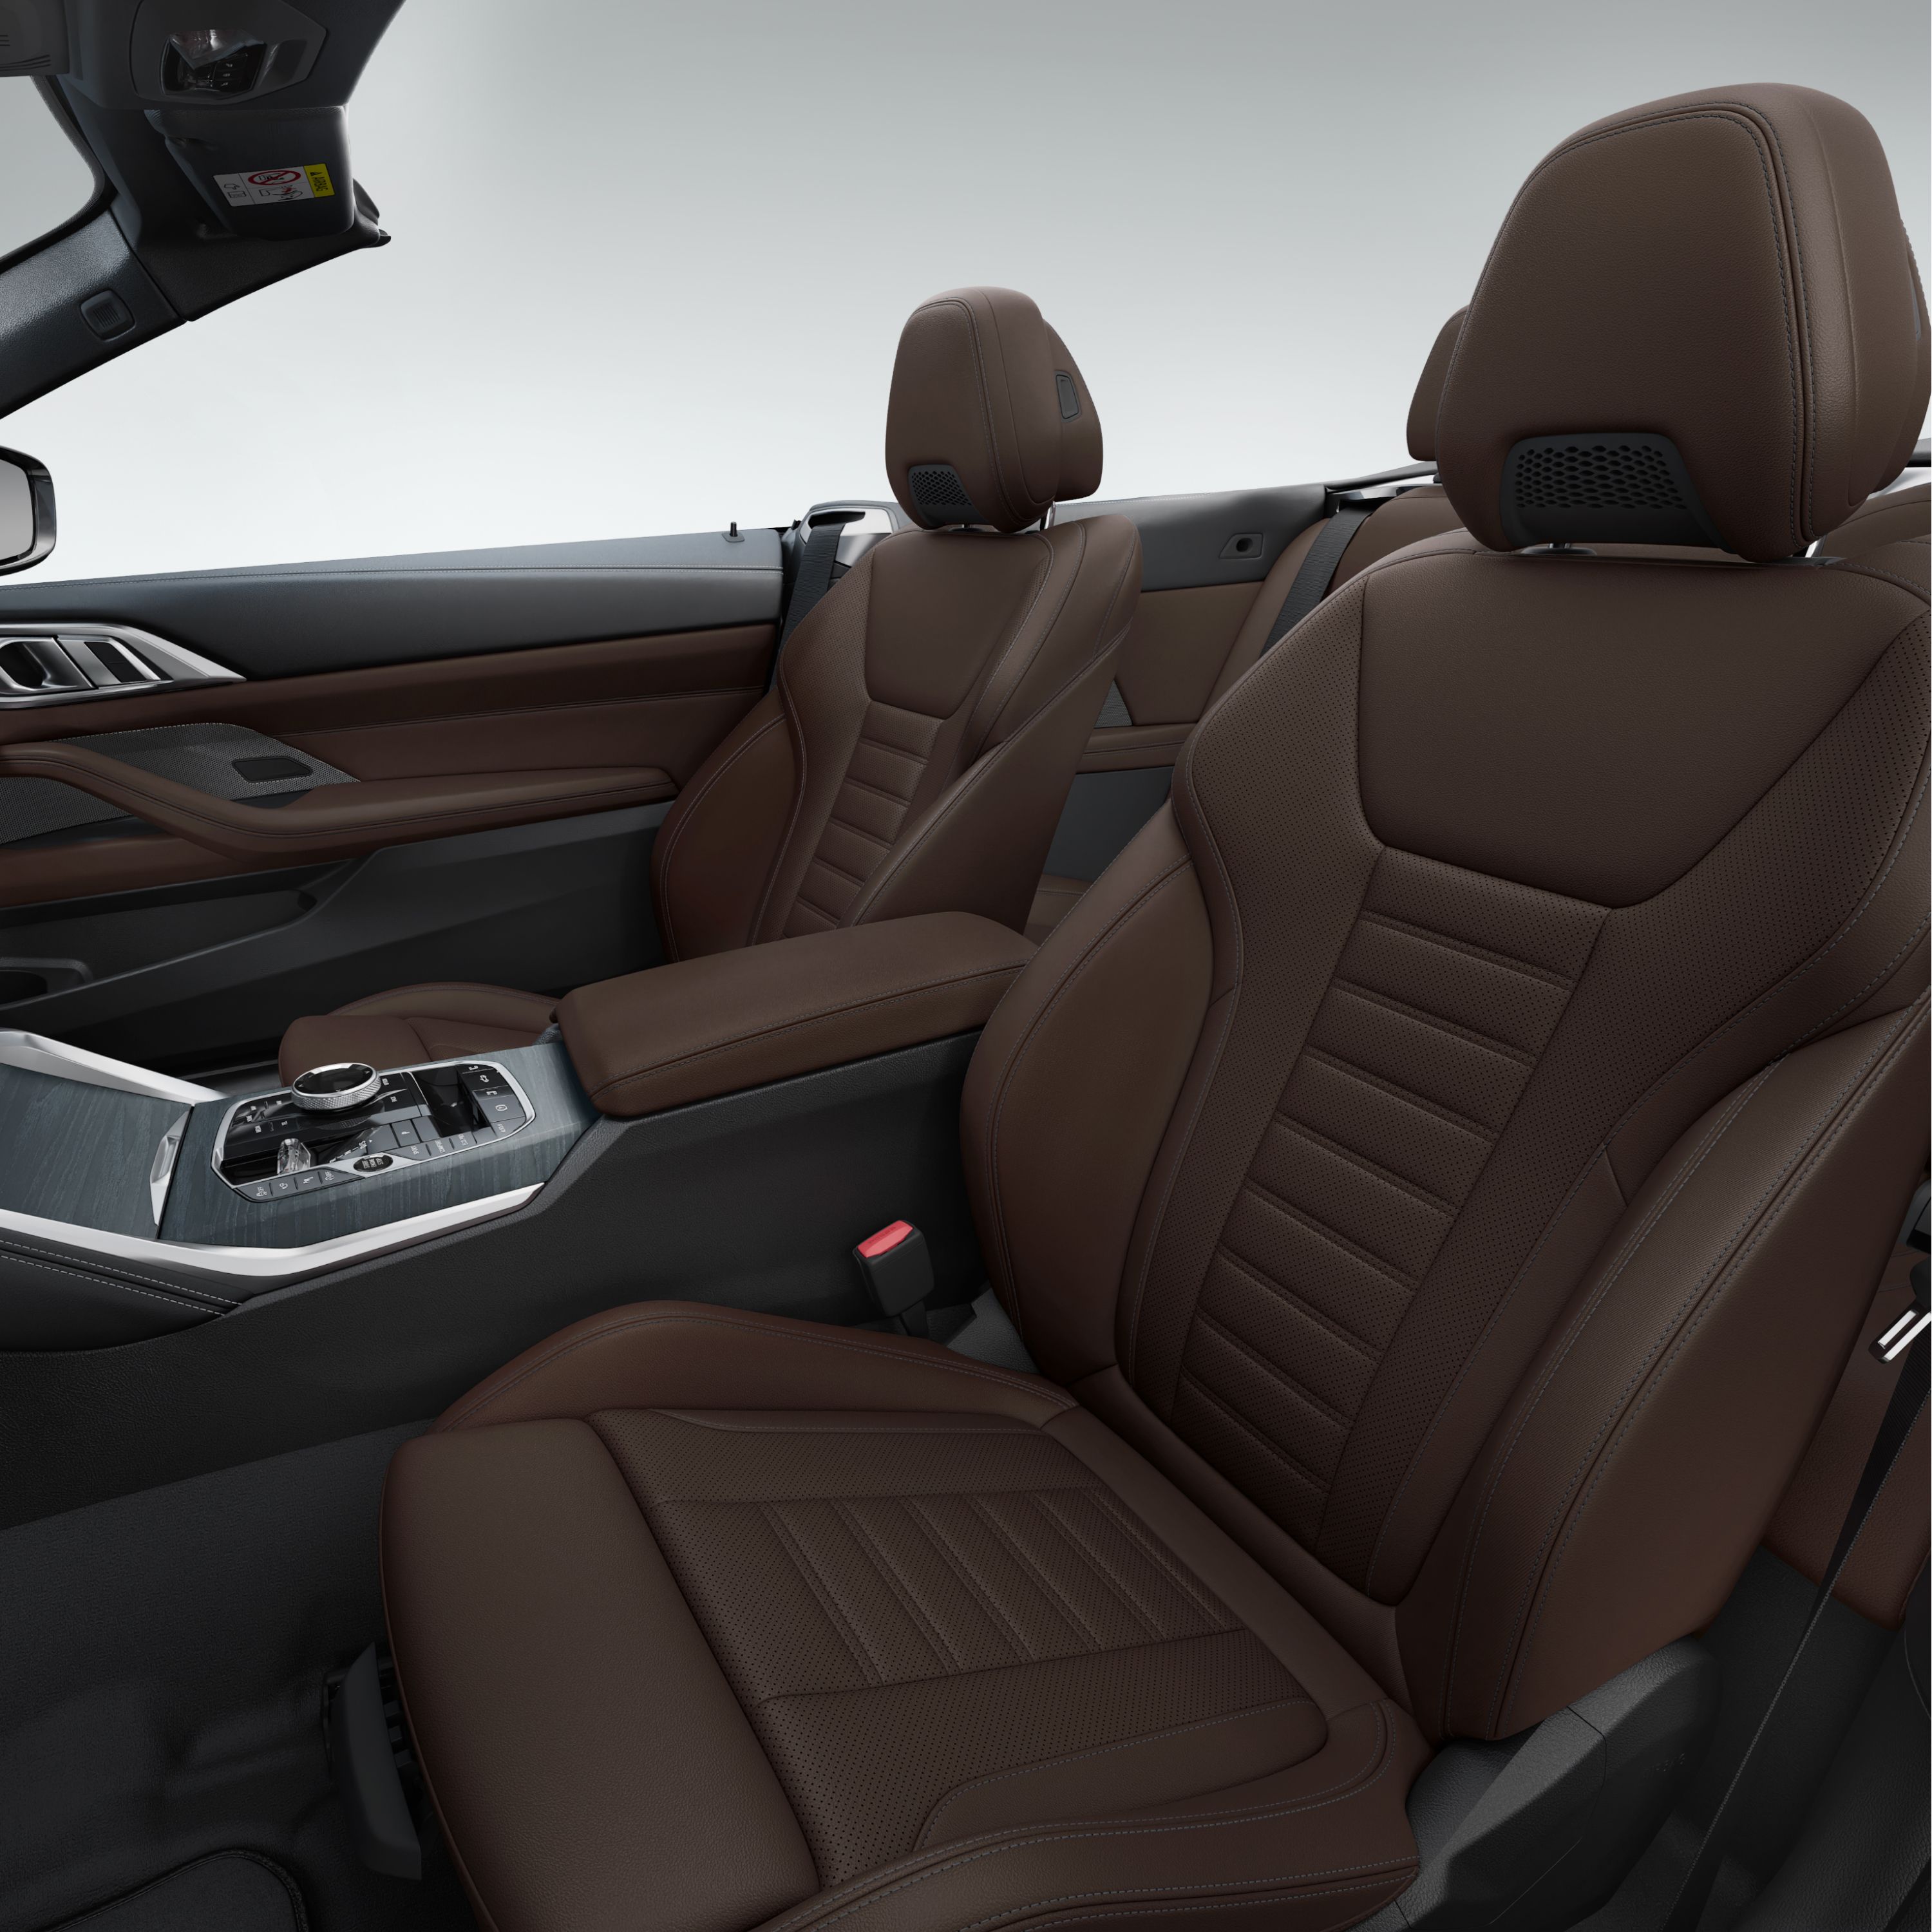 Nowy design obić siedzeń w BMW serii 4 Cabrio